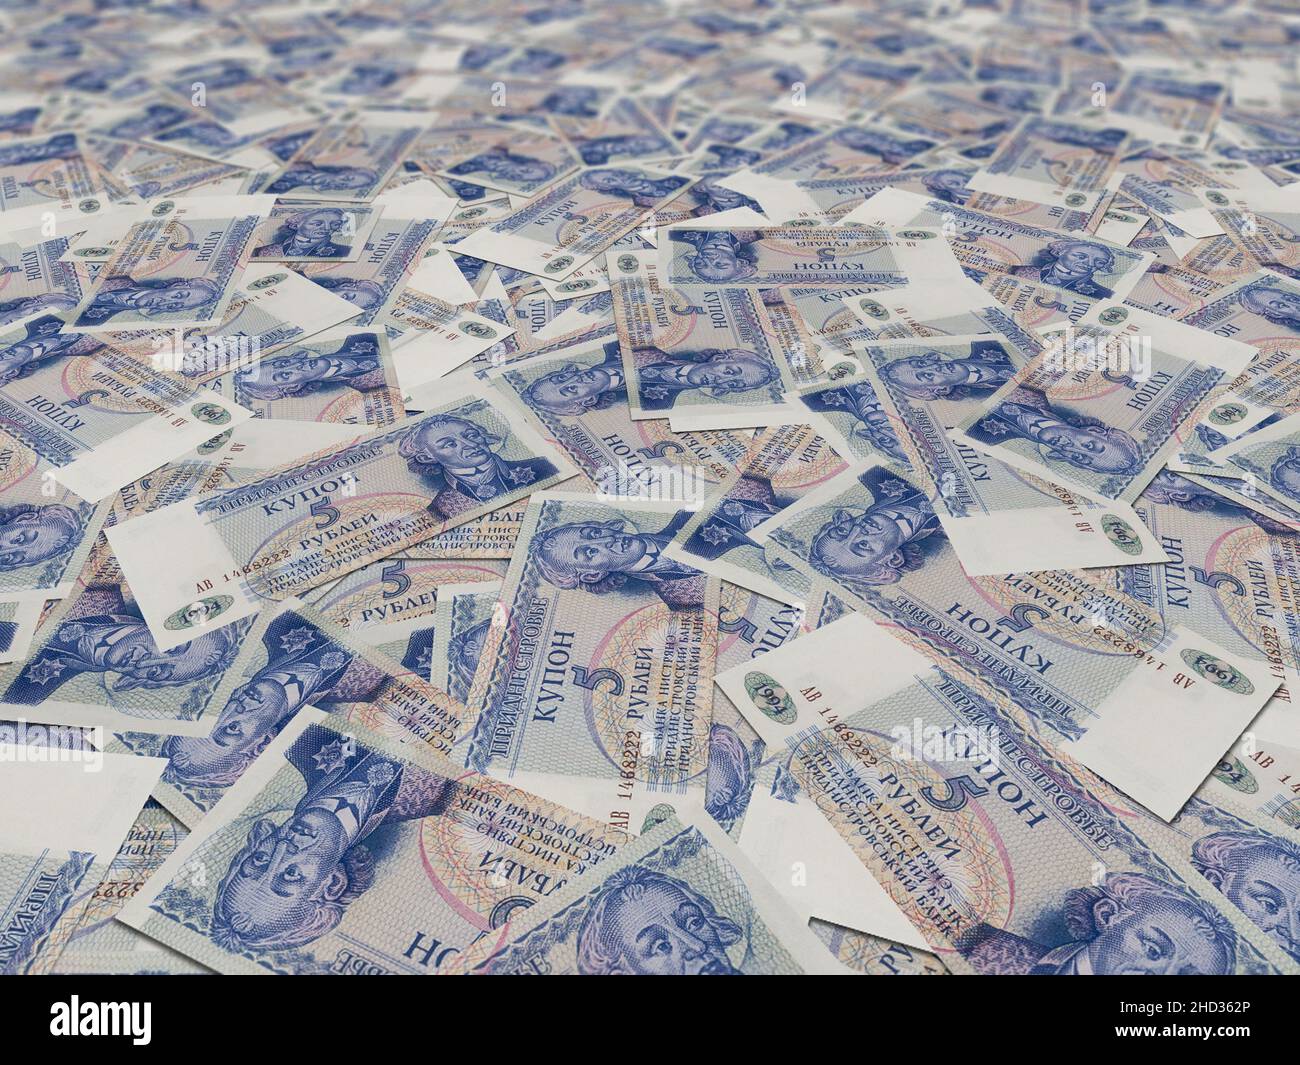 Gros plan sur les billets de 5 roubles de Transnistrie répartis dans un cadre complet Banque D'Images